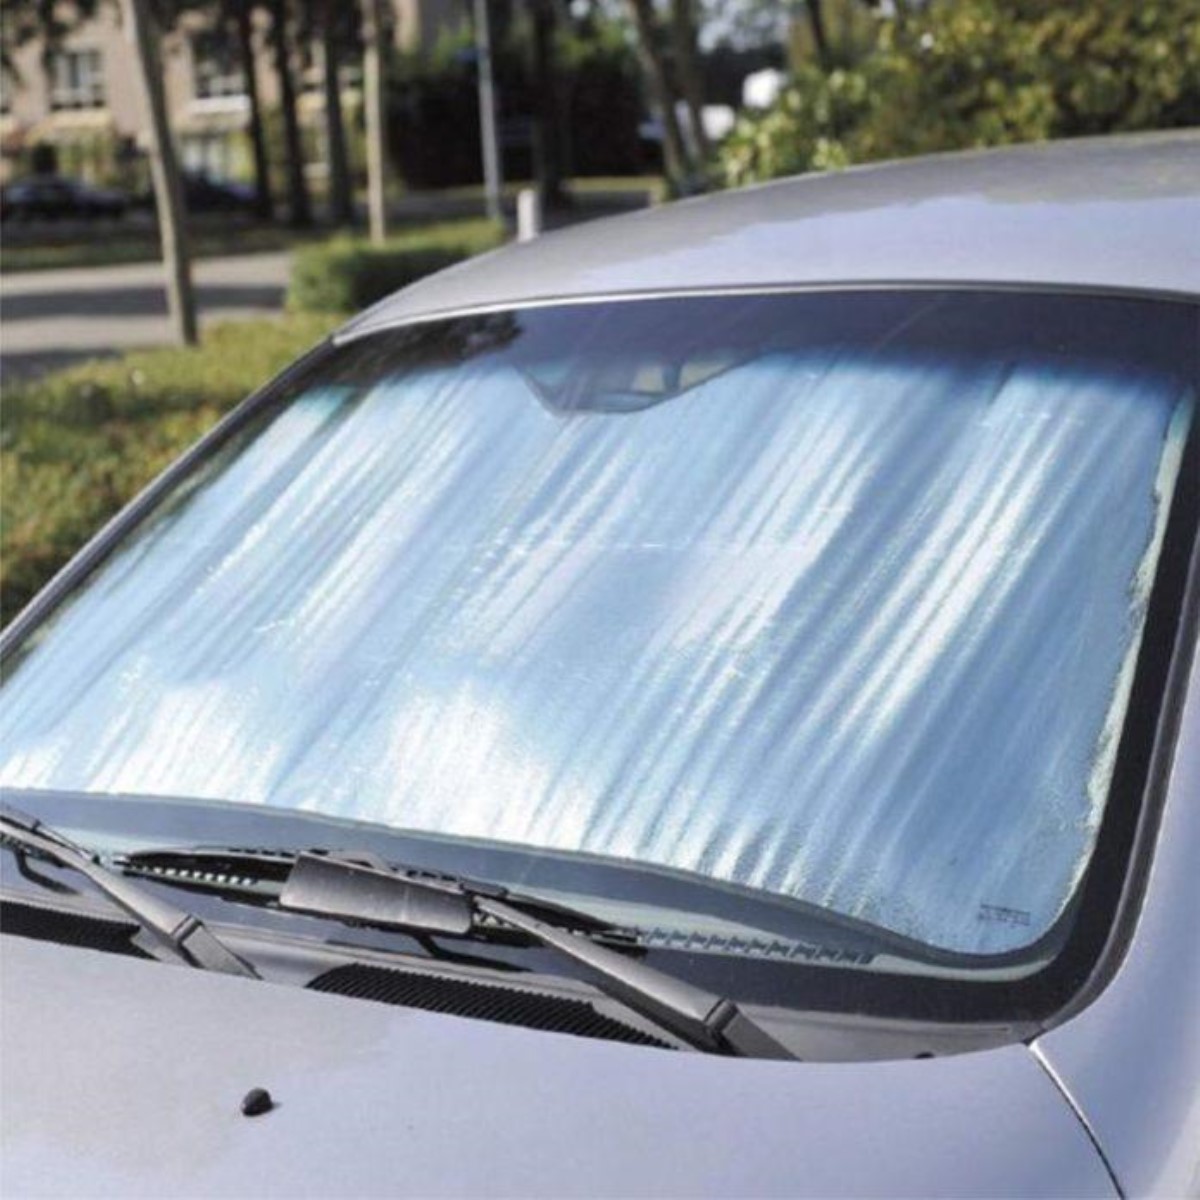 В жару солнцезащитный экран может сильно навредить автомобилю